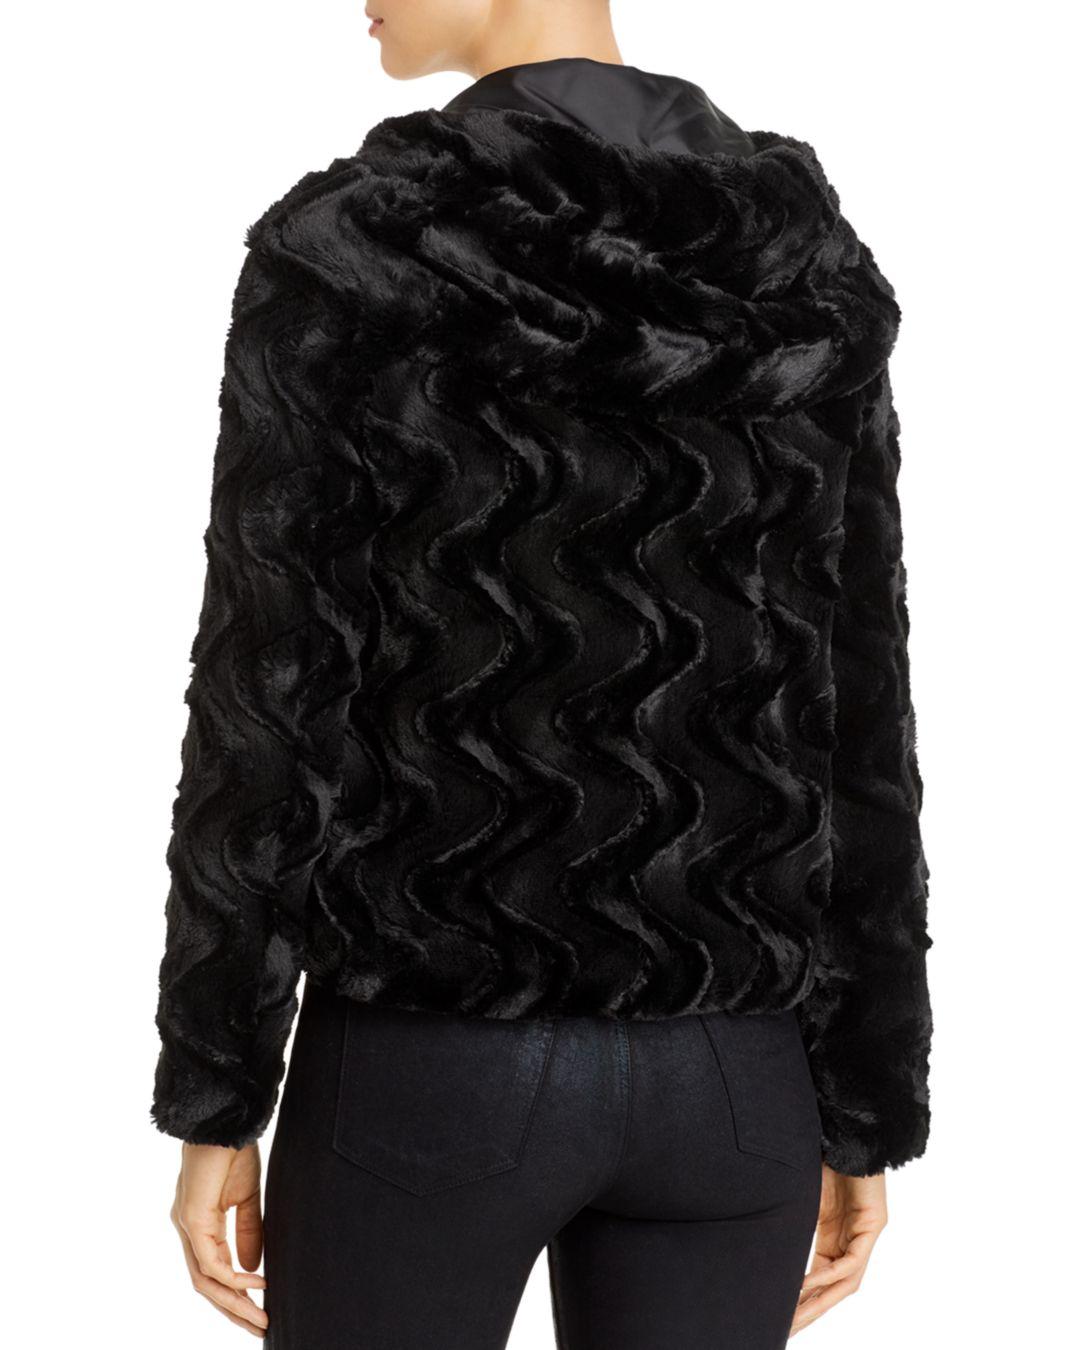 Vero Moda Curly Faux Fur Hooded Jacket in Black - Lyst